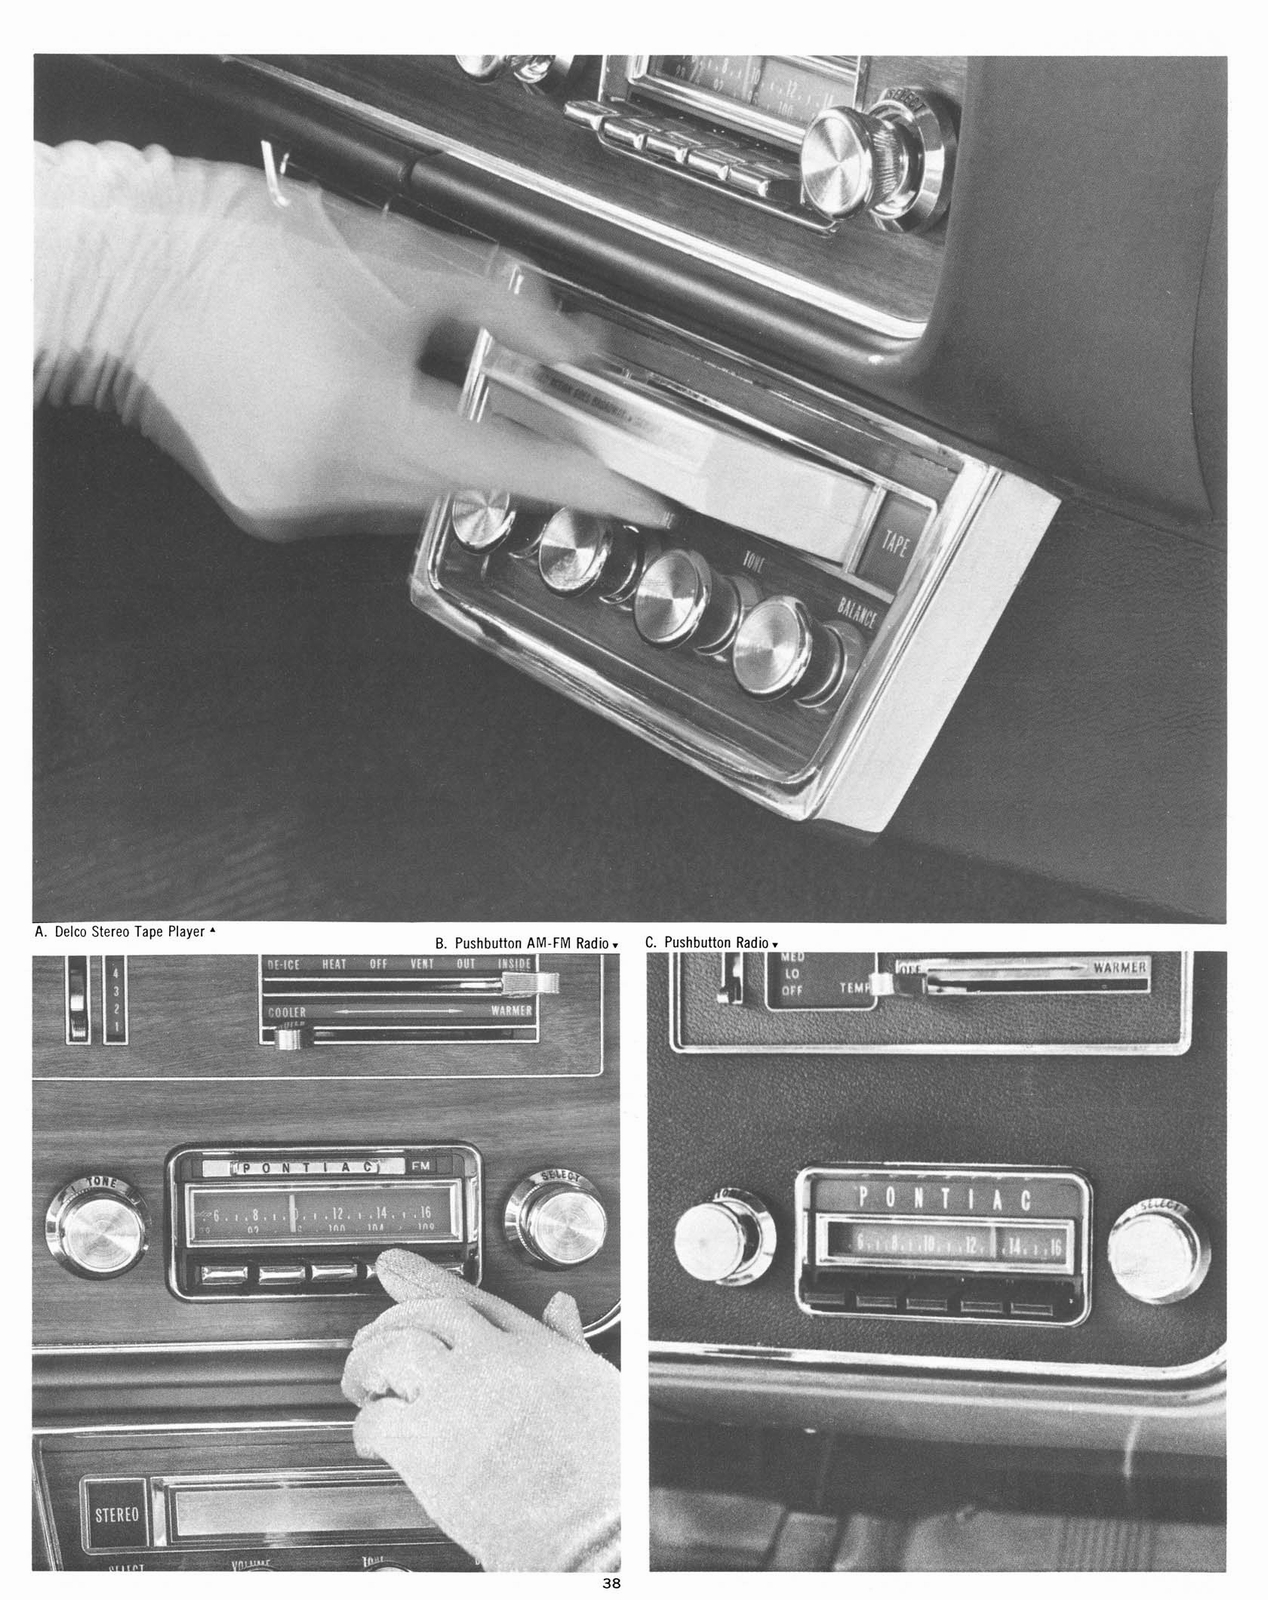 n_1967 Pontiac Accessories-38.jpg